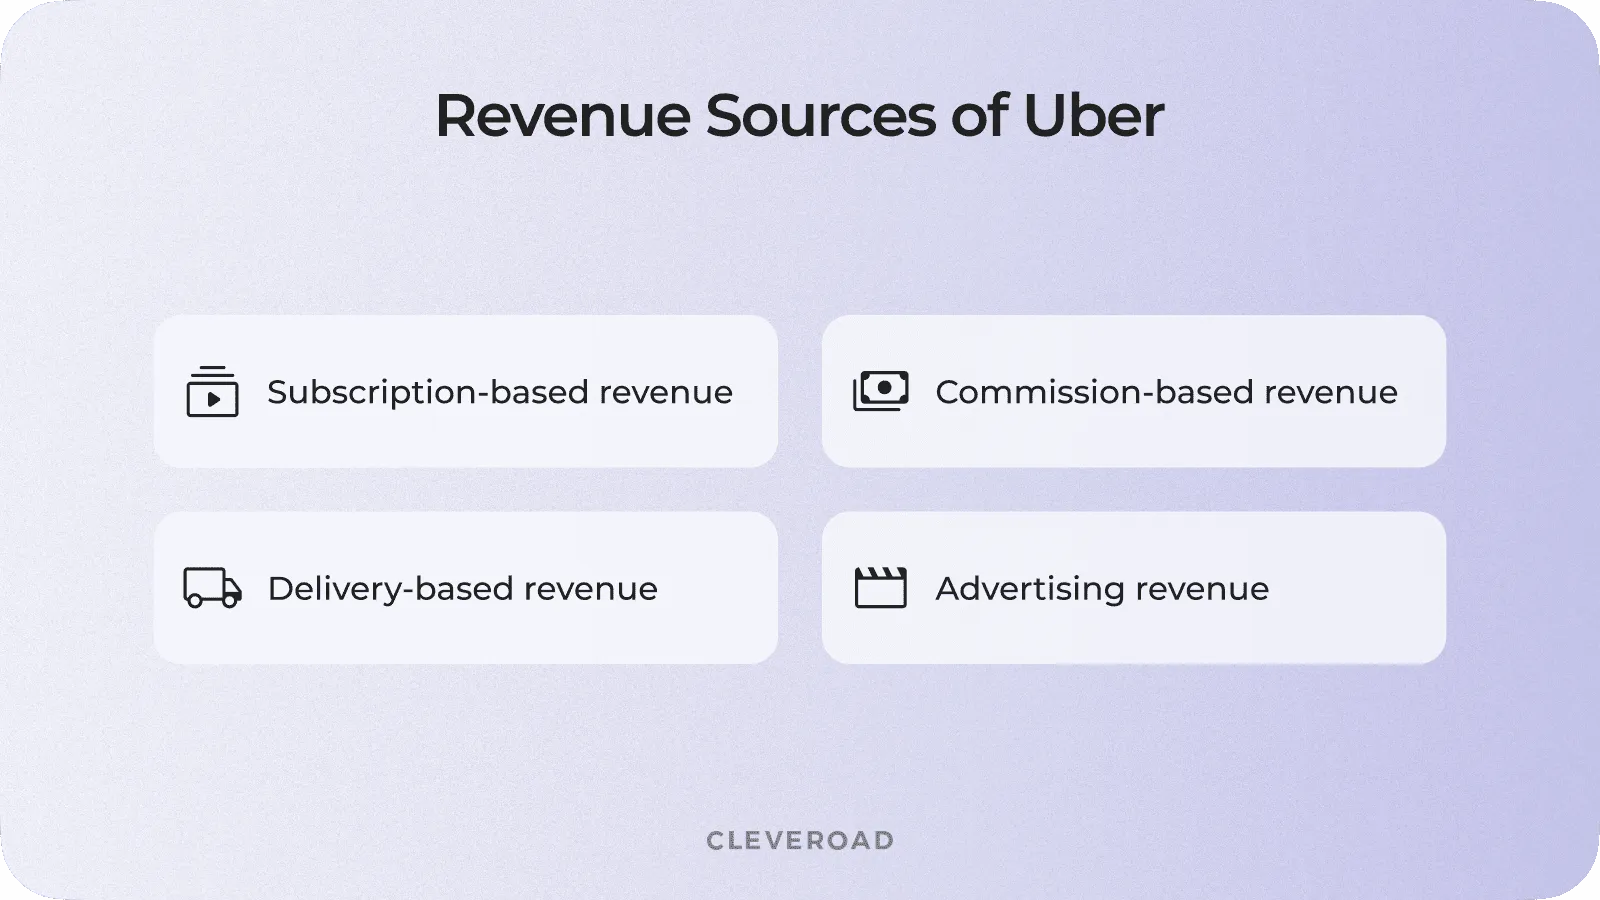 Revenue sources of Uber platform